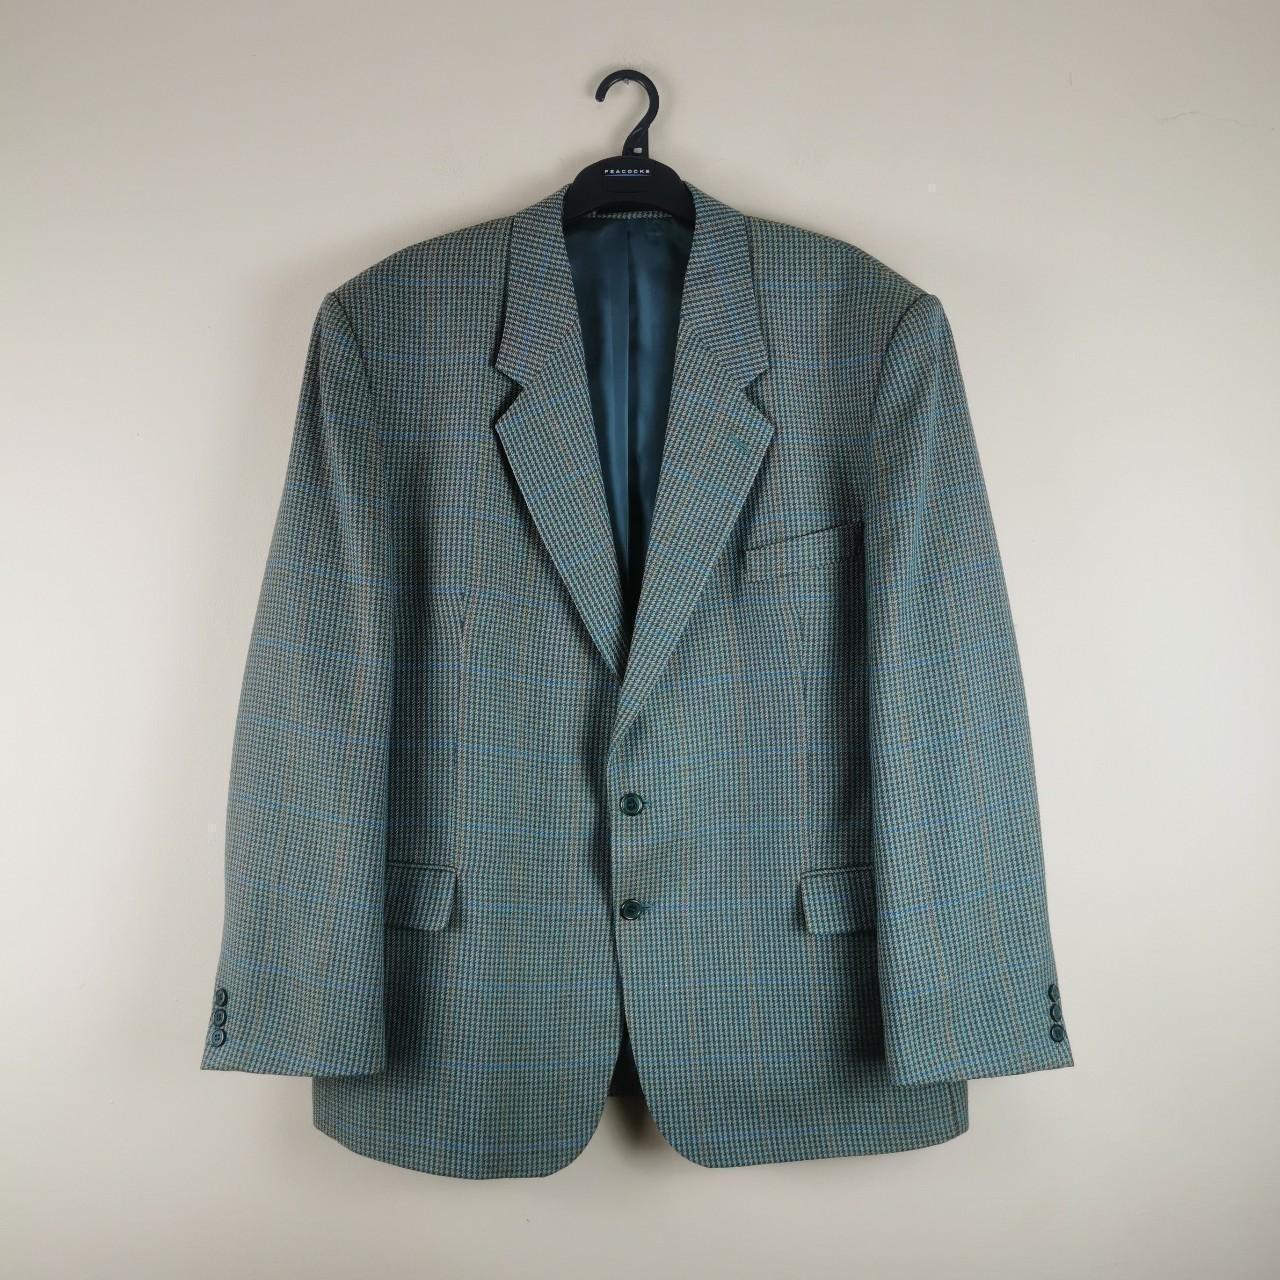 vintage 90s mens green dogtooth suit jacket - brand:... - Depop